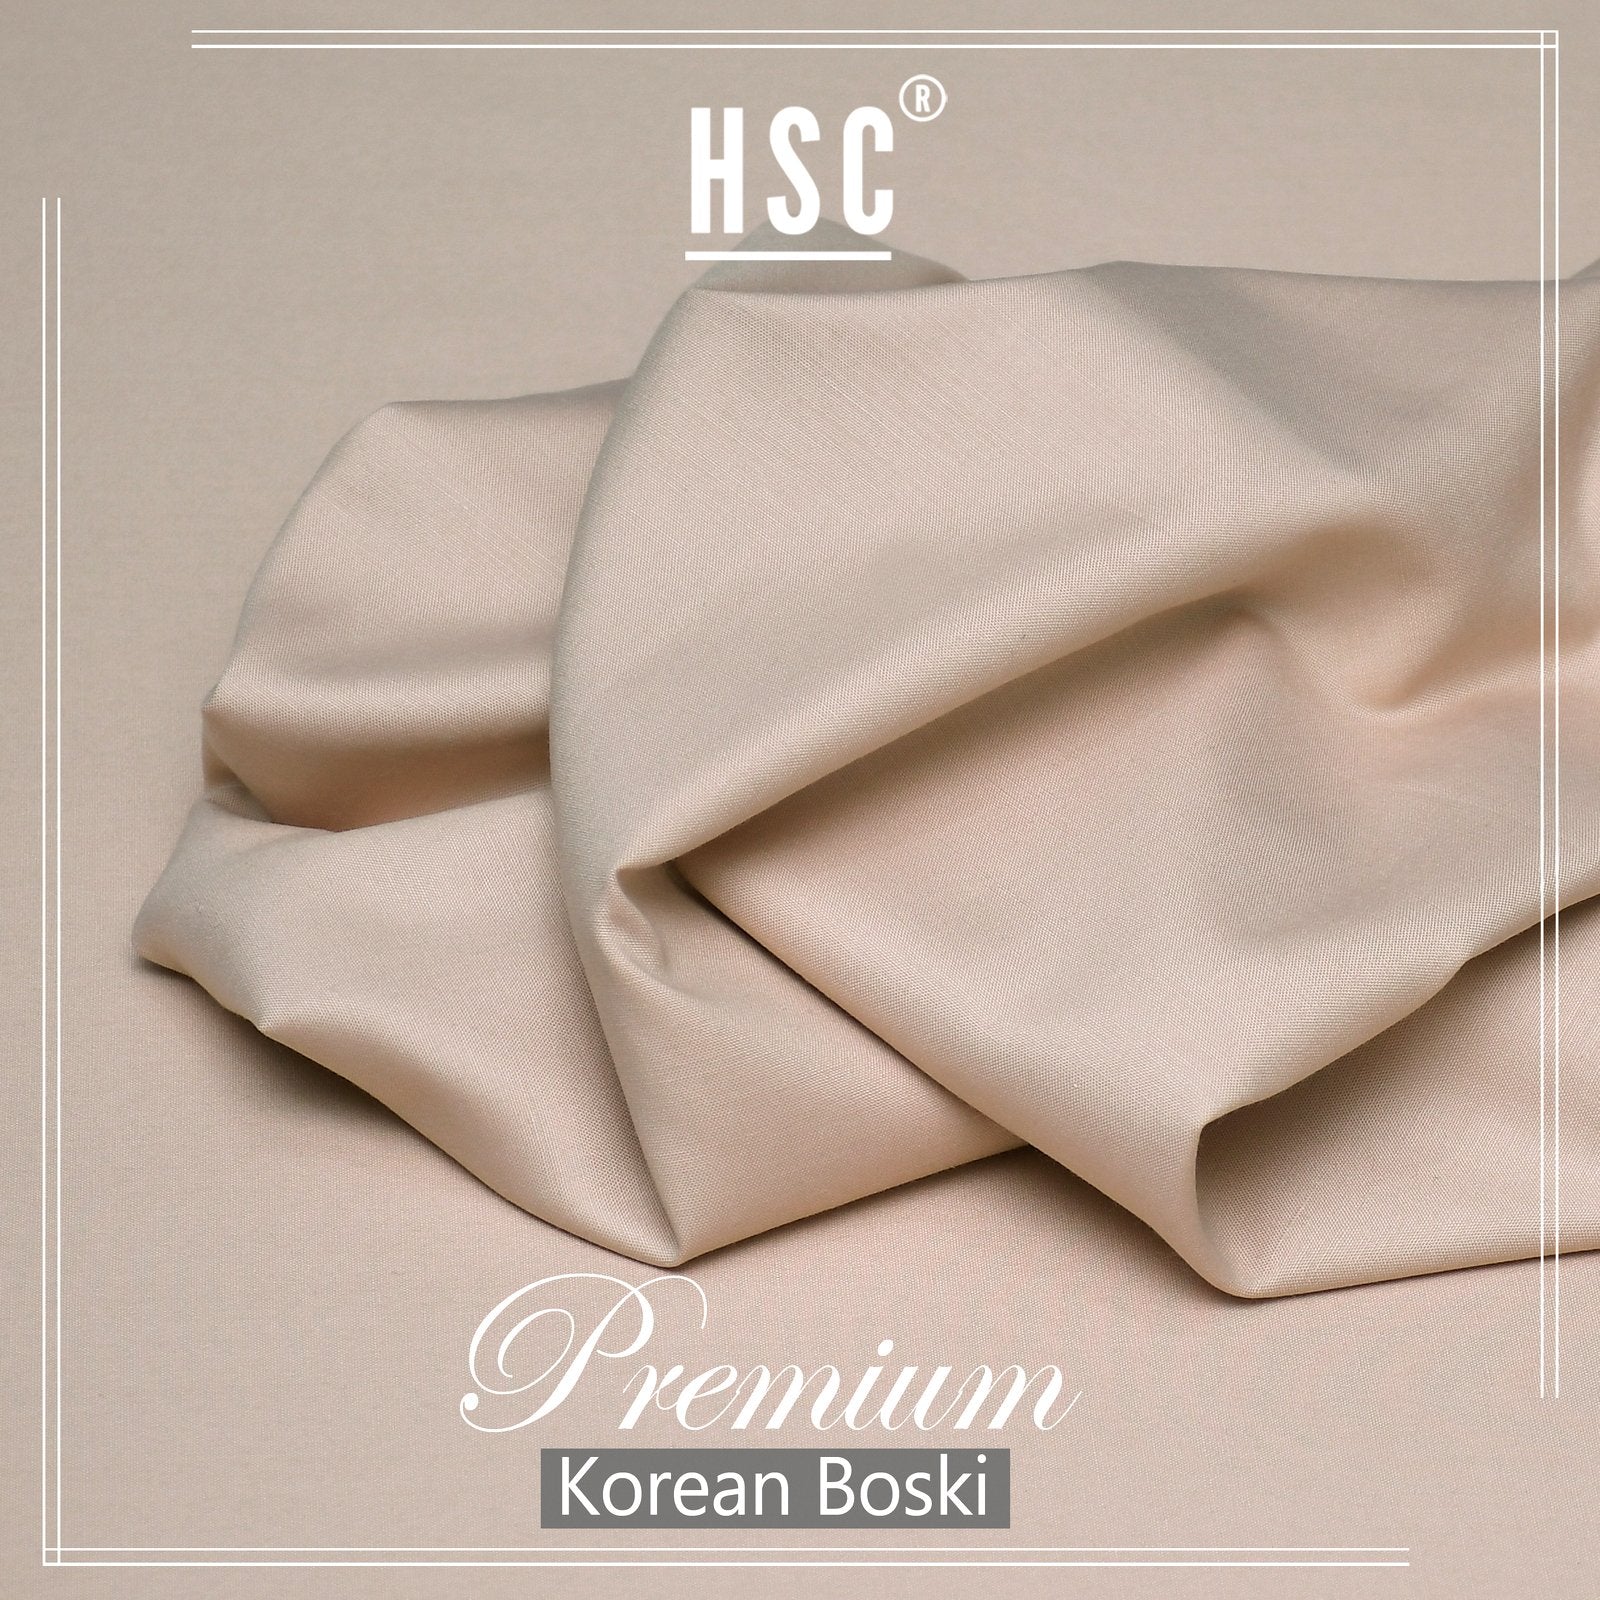 Buy1 Get 1 Free Premium Korean Boski For Men - NPKB4 HSC